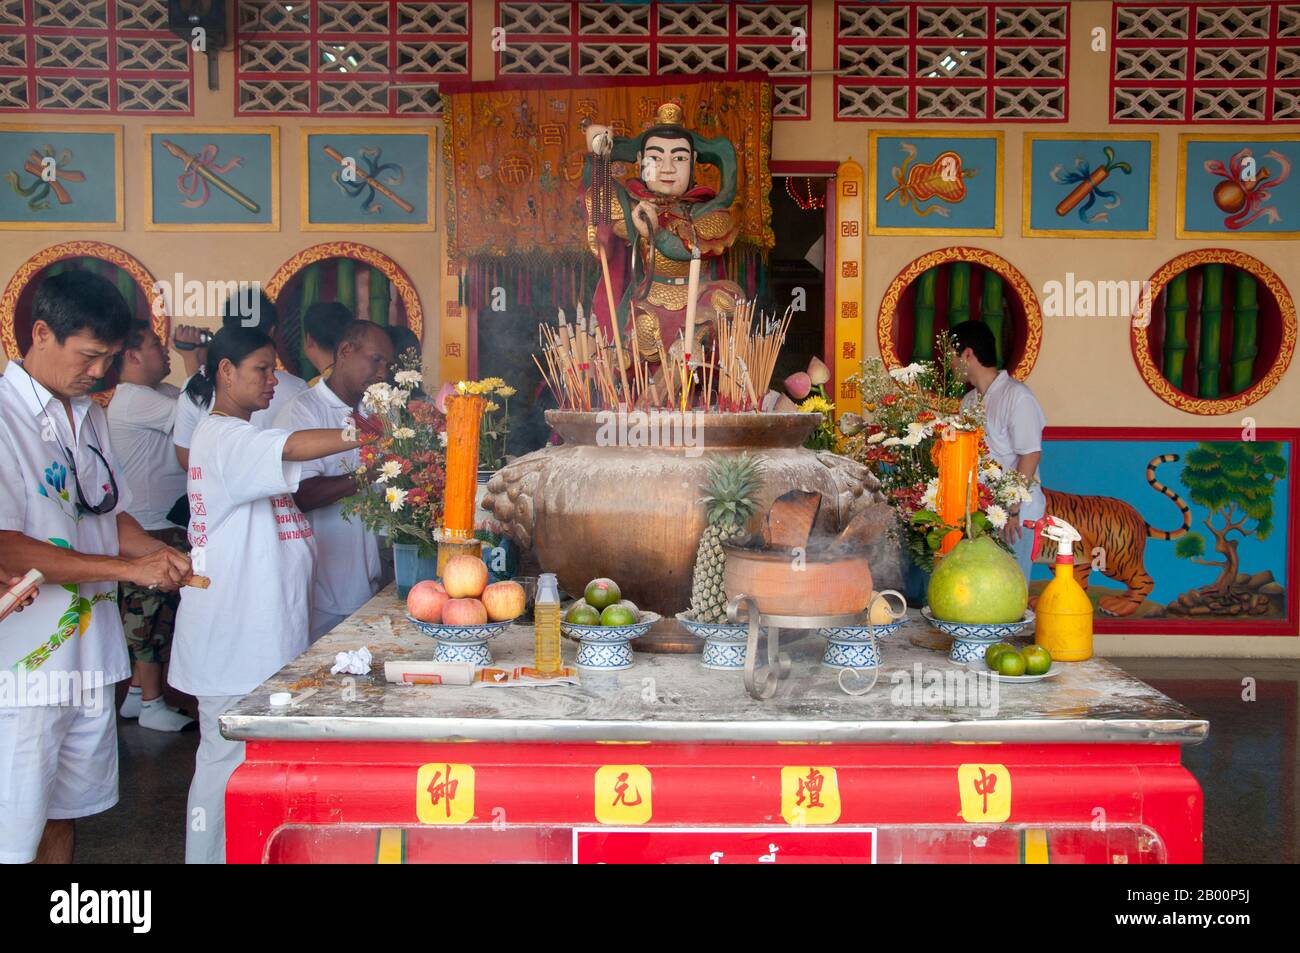 Thailandia: Un altare carico di frutta a San Chao Bang Niew (tempio taoista cinese), Phuket Vegetarian Festival. Il Festival vegetariano è un festival religioso che si tiene ogni anno sull'isola di Phuket, nel sud della Thailandia. Attrae folle di spettatori a causa di molti degli insoliti rituali religiosi che vengono eseguiti. Molti devoti religiosi si schianteranno di spade, perforeranno le loro guance con oggetti taglienti e commetteranno altri atti dolorosi. Foto Stock